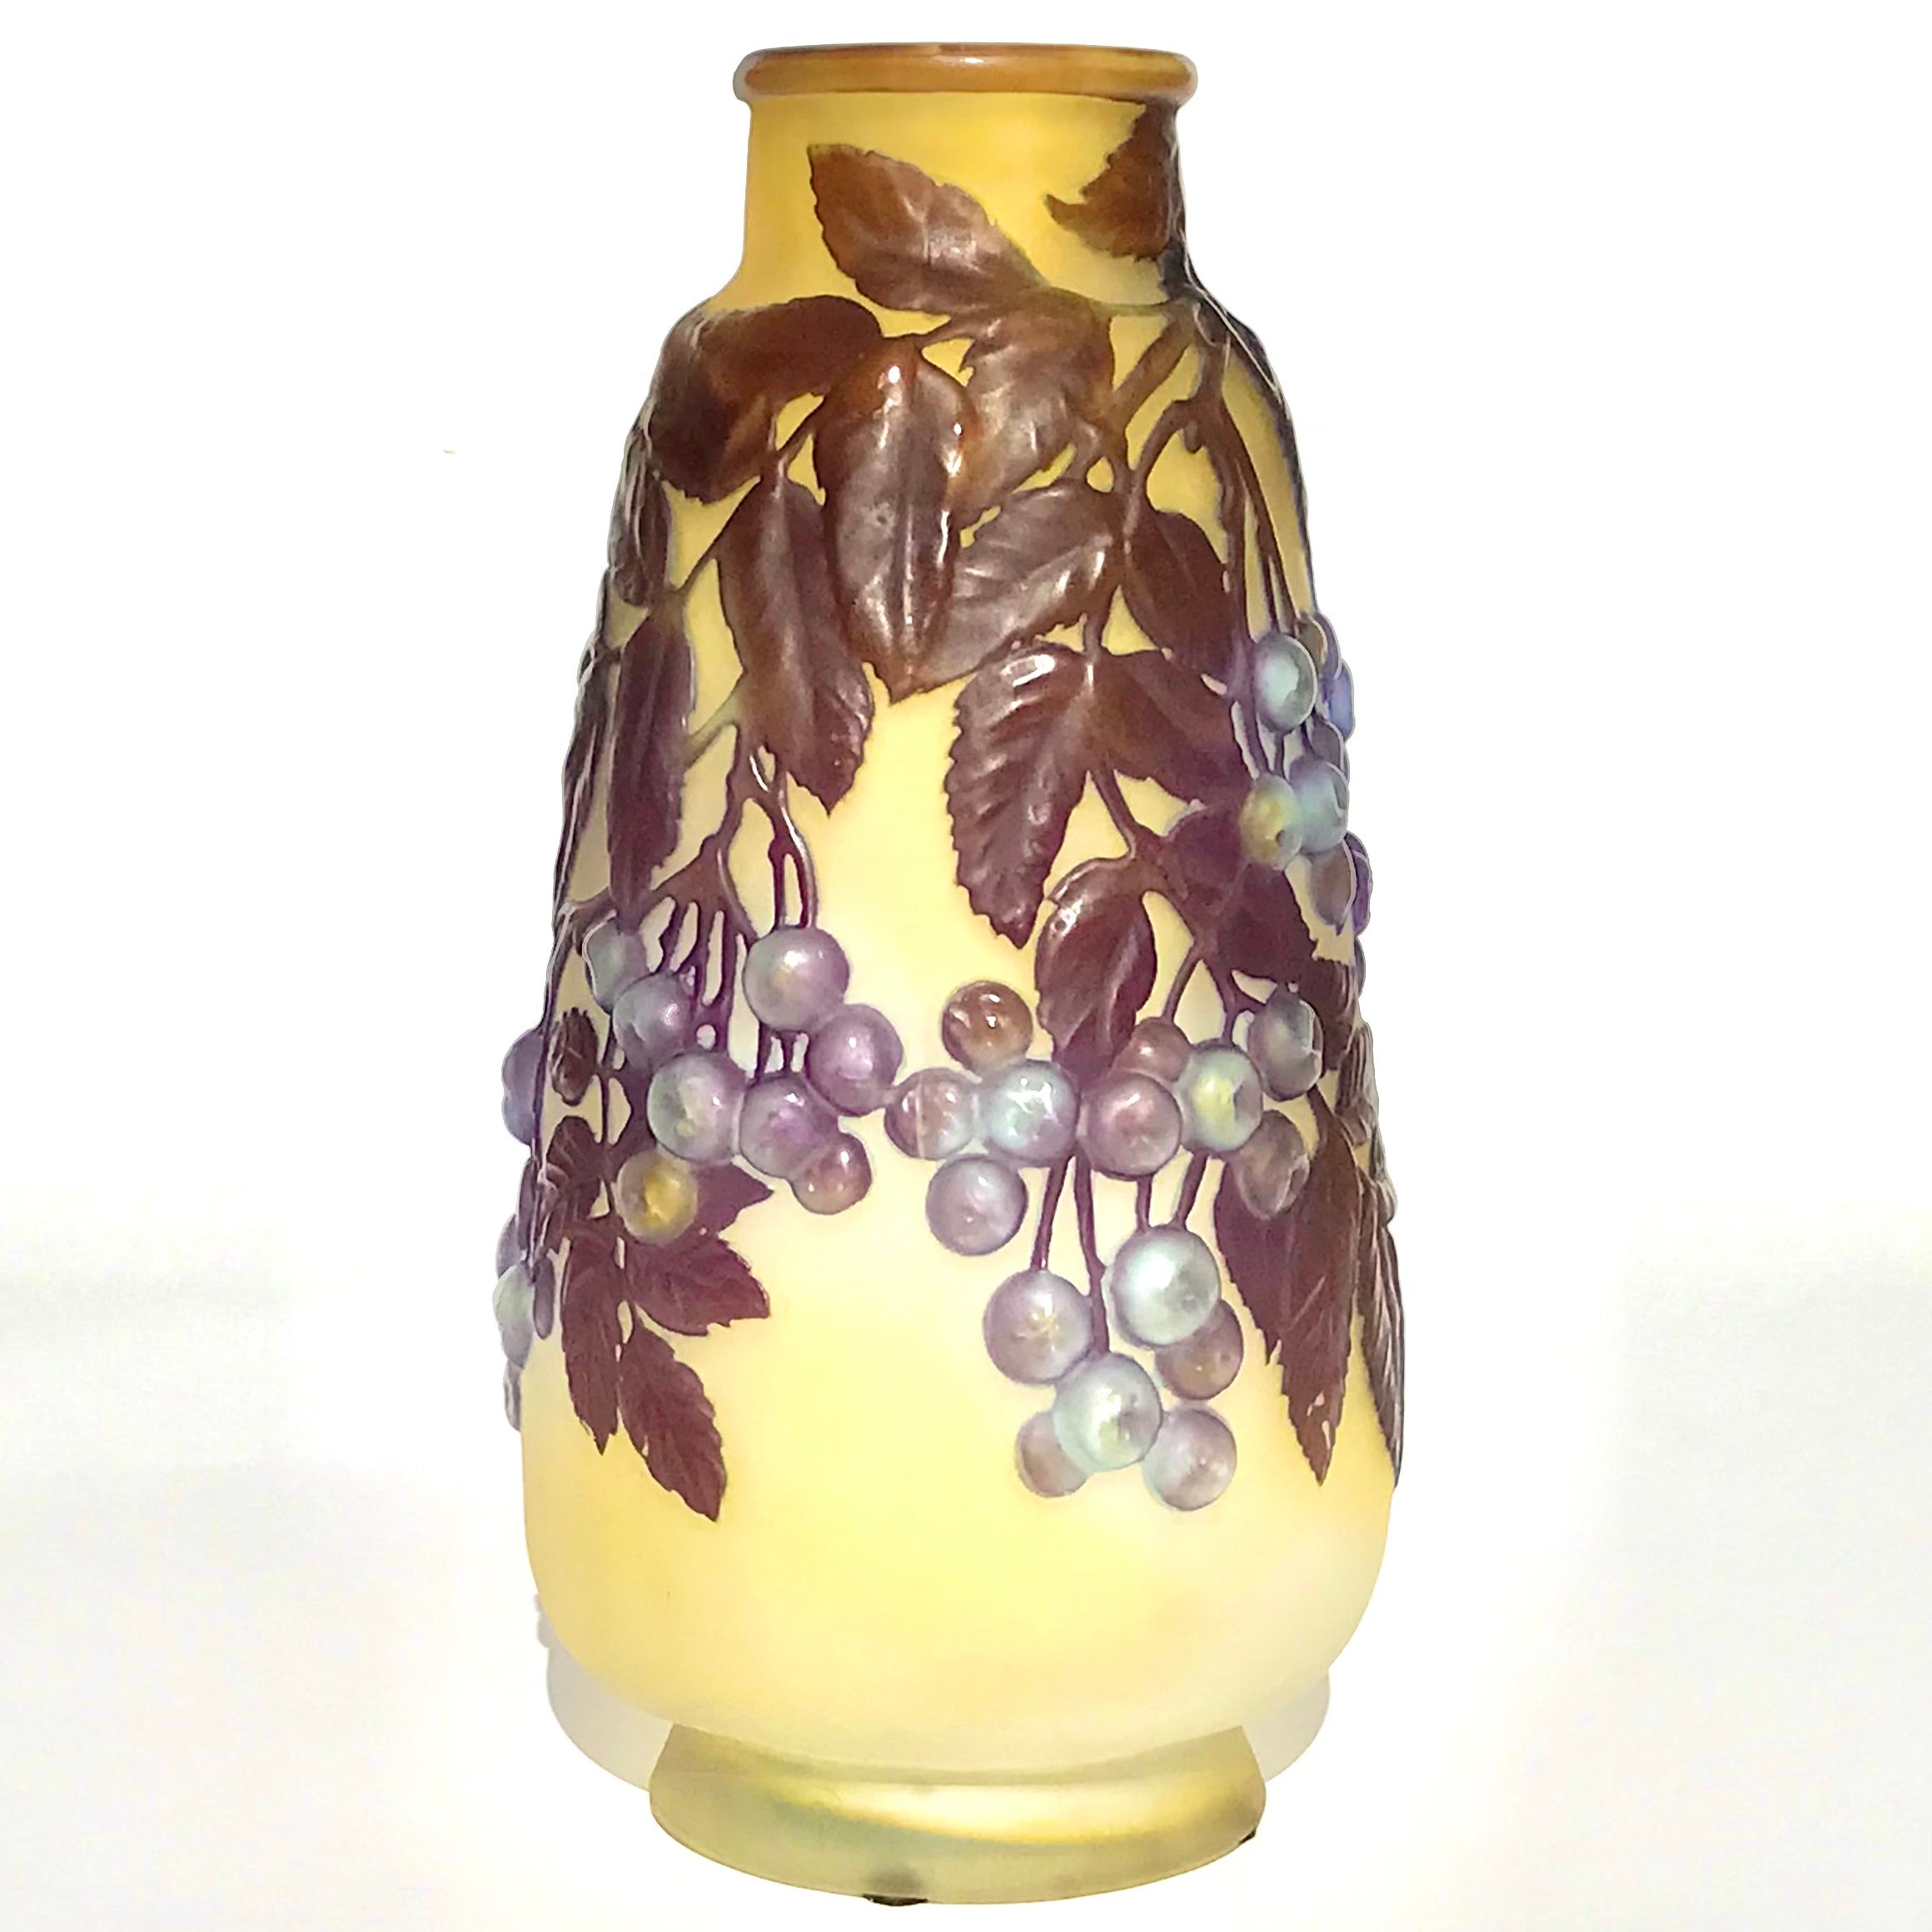 Emile Galle (Französisch 1846 -1904) Soufflé-Kamee-Vase

Große Vase mit Beeren aus mundgeblasenem Kamee-Glas von Emile Gallé, um 1910 Gelb- und cremefarbener Hintergrund mit mundgeblasenen souffléblauen Beeren auf Zweigen mit violetten Blättern,